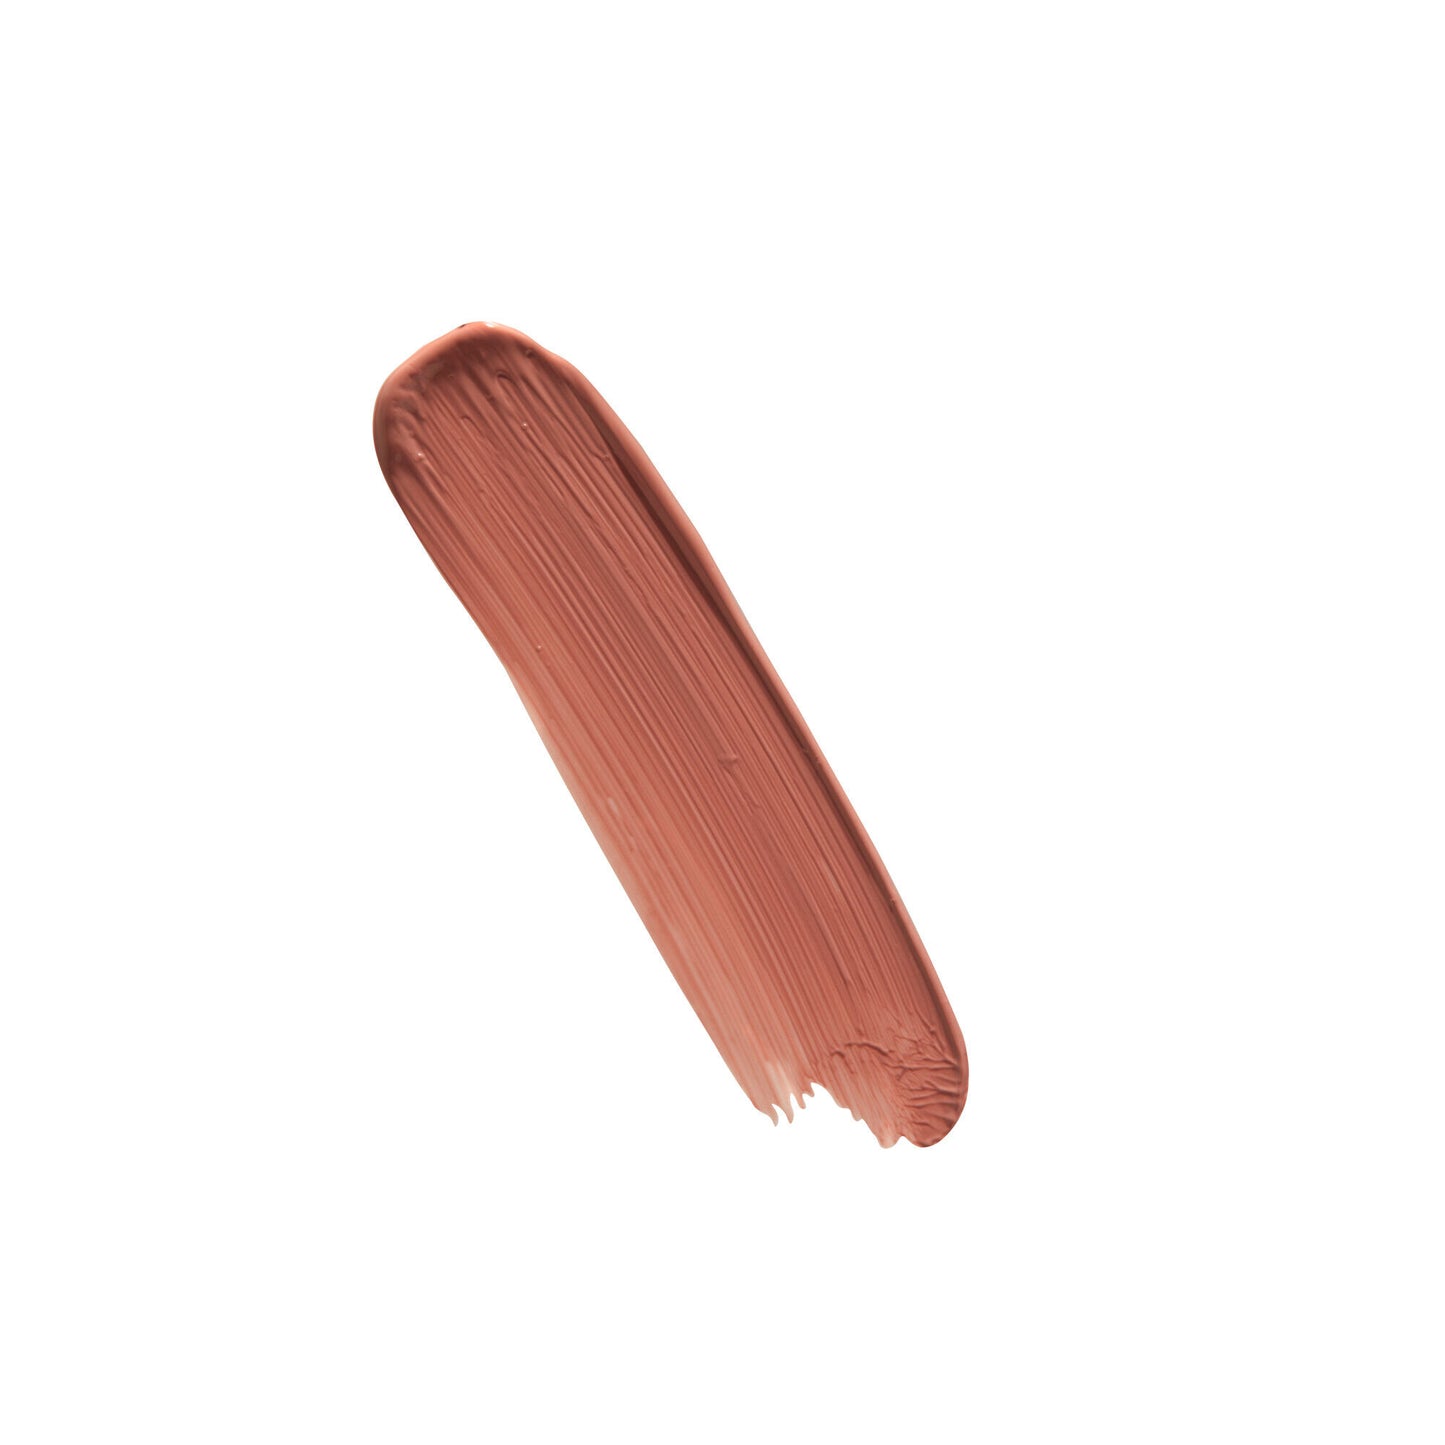 Revolution Matte Bomb Liquid Lipstick Nude Allure